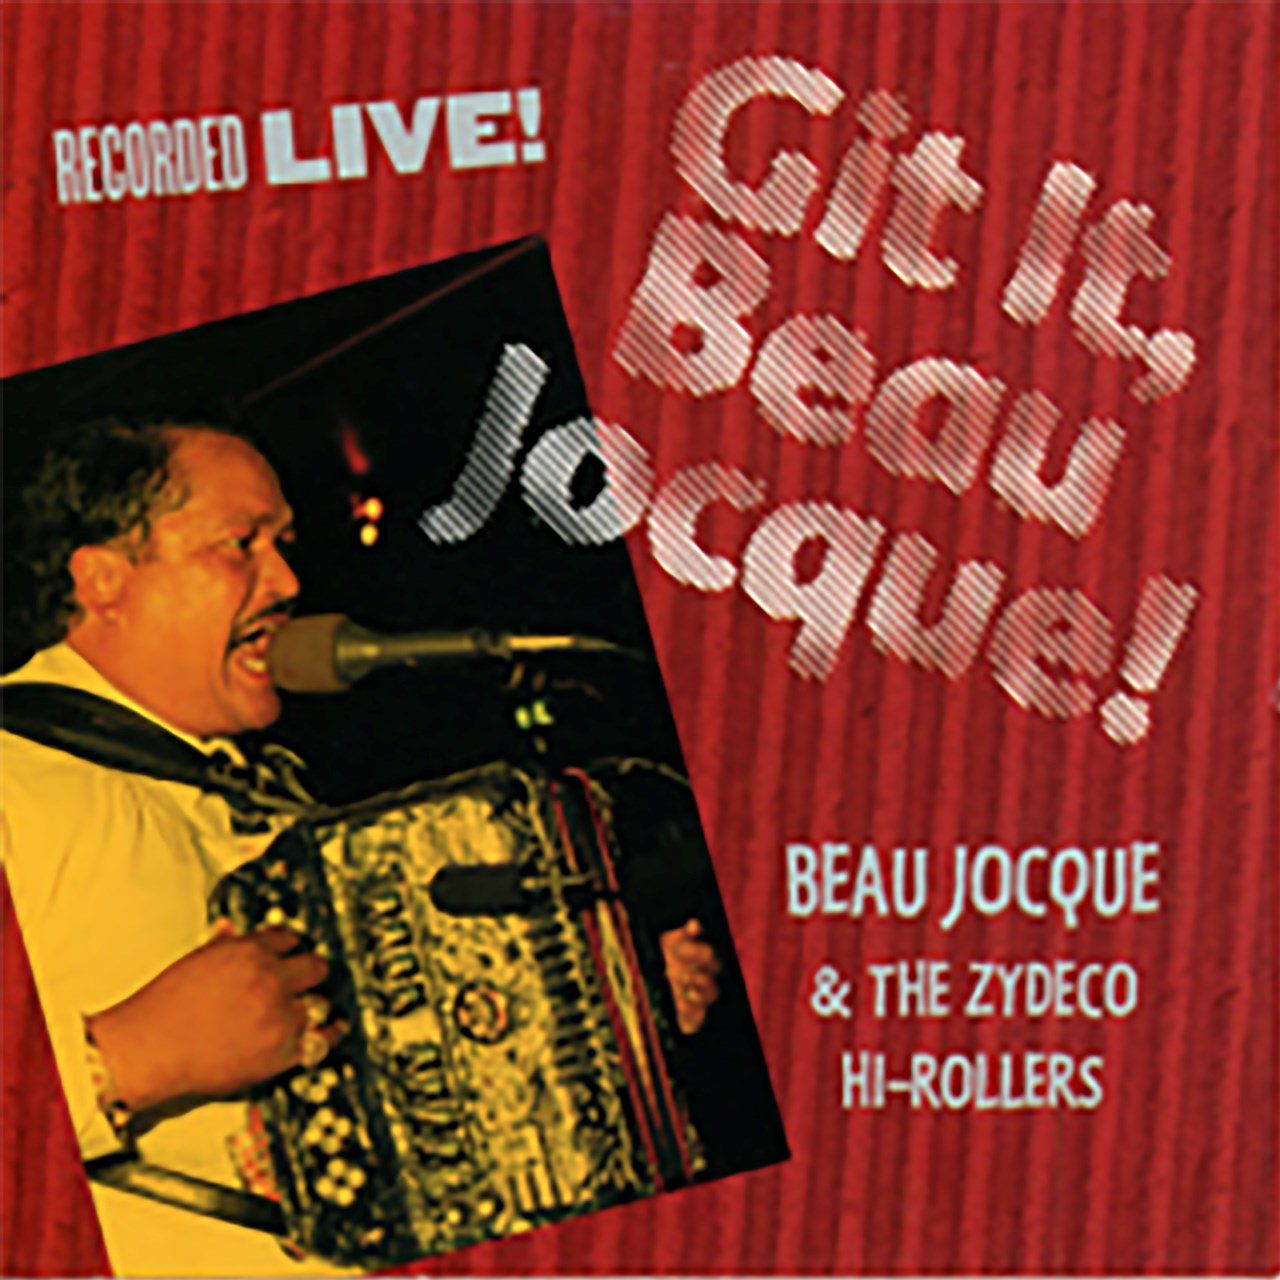 Beau Jocque & The Zydeco Hi-Rollers – Git It Beau Jocque! cover album